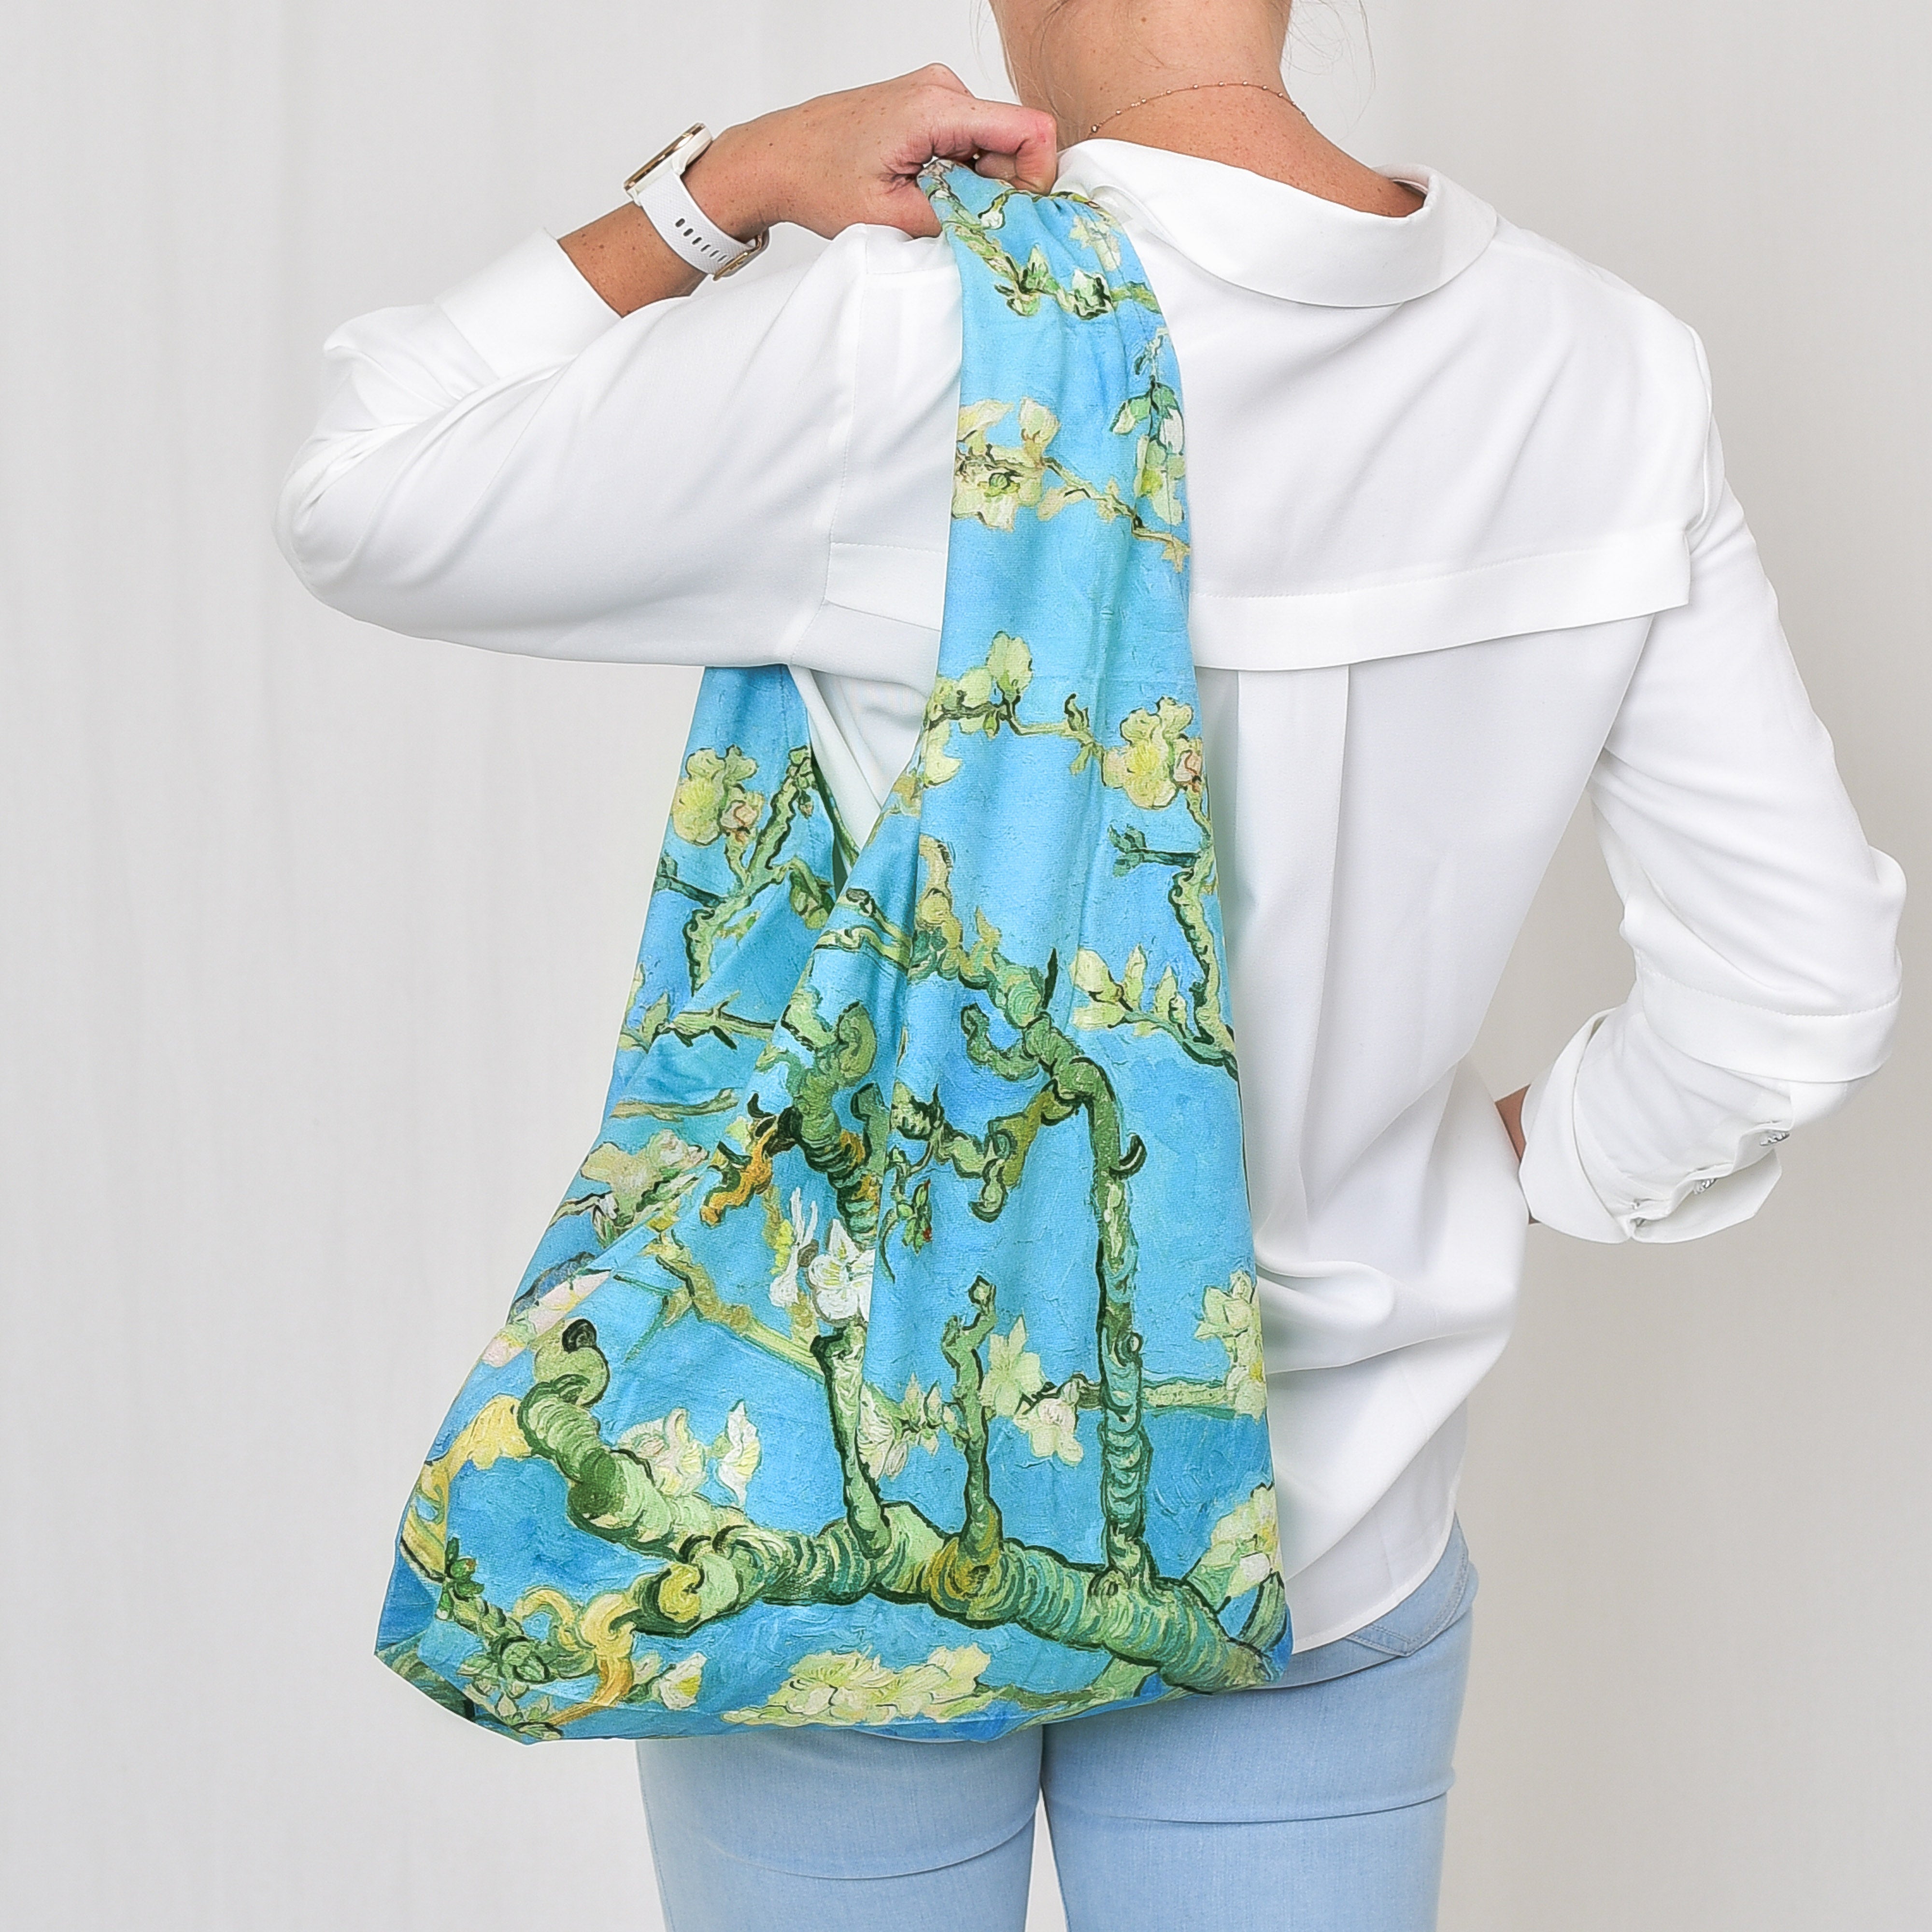 Gegužinis krepšys Vincent Van Gogh "Almond Blossom"